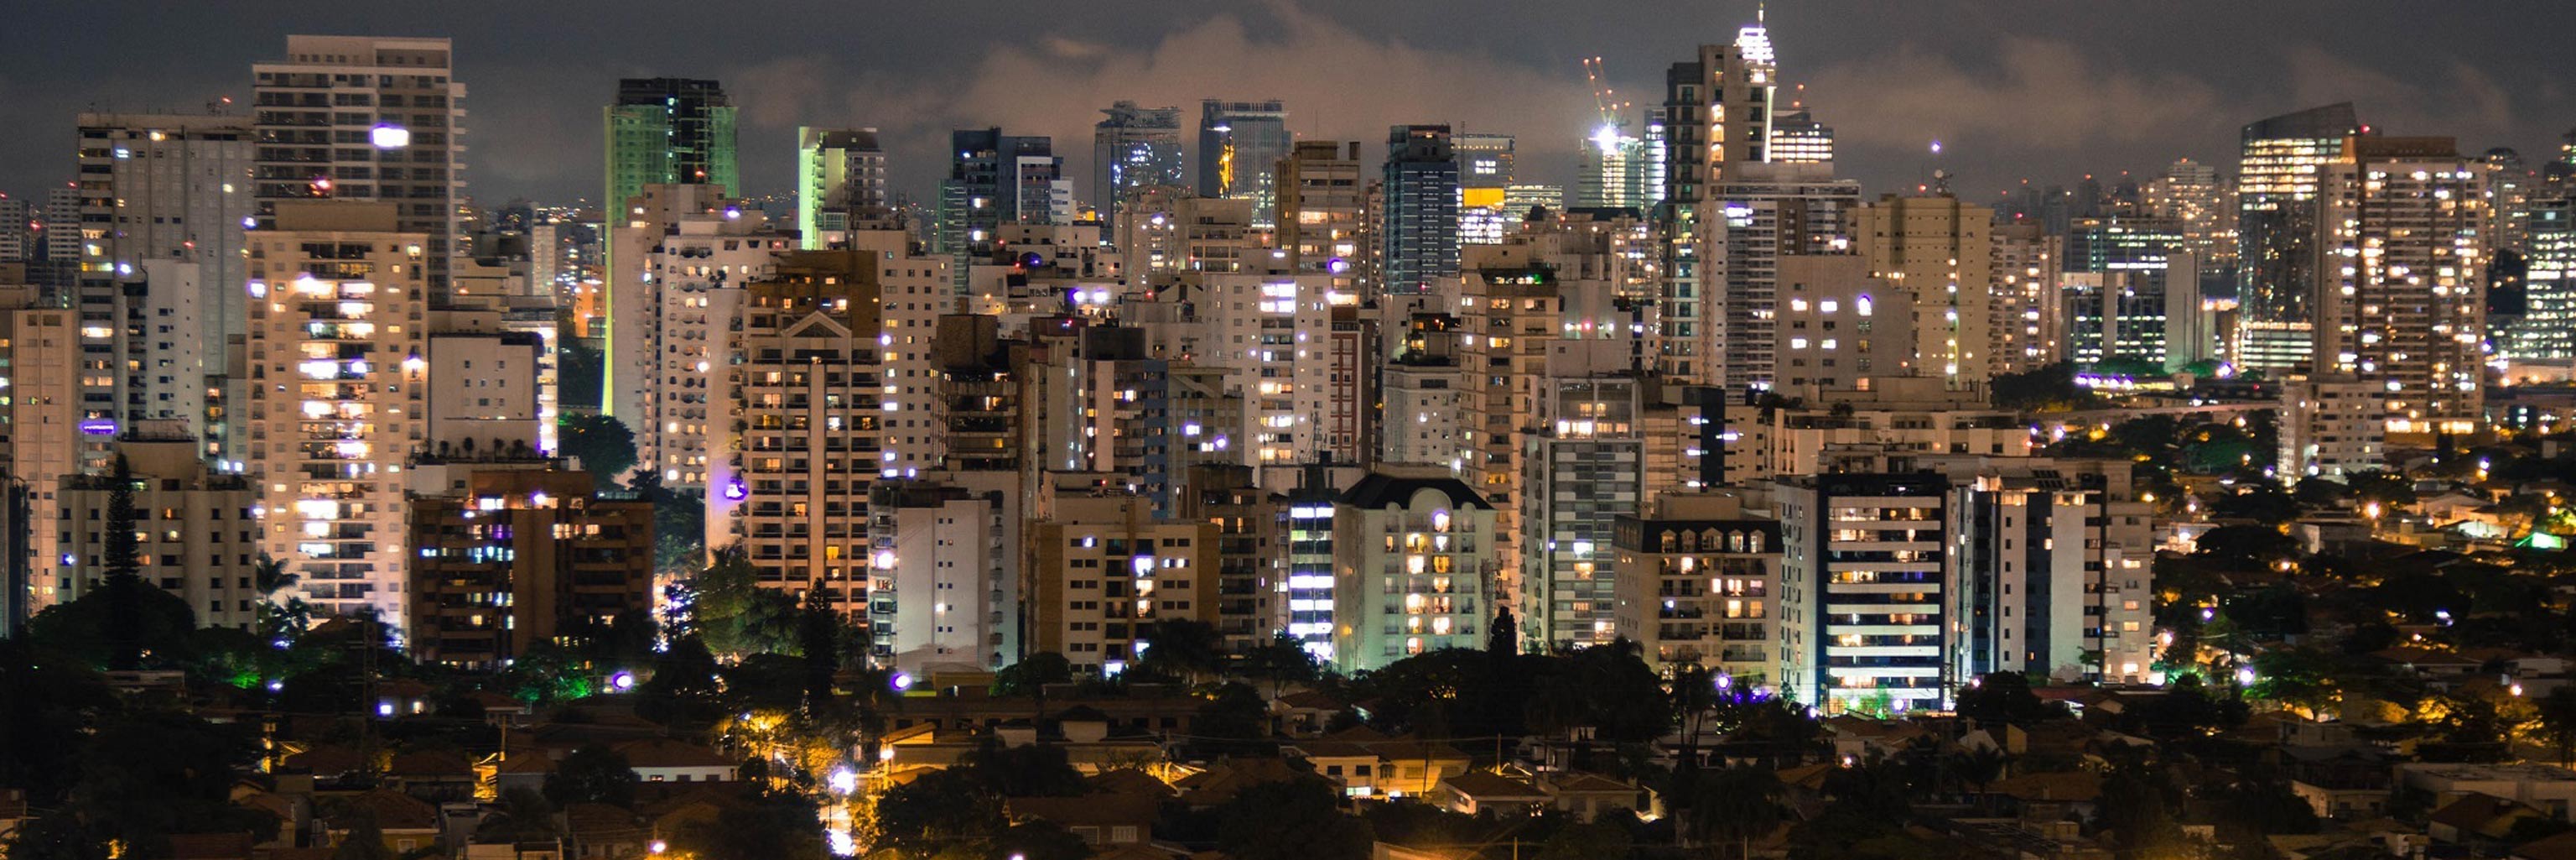 Cityscape of Sao Paulo, Brazil 